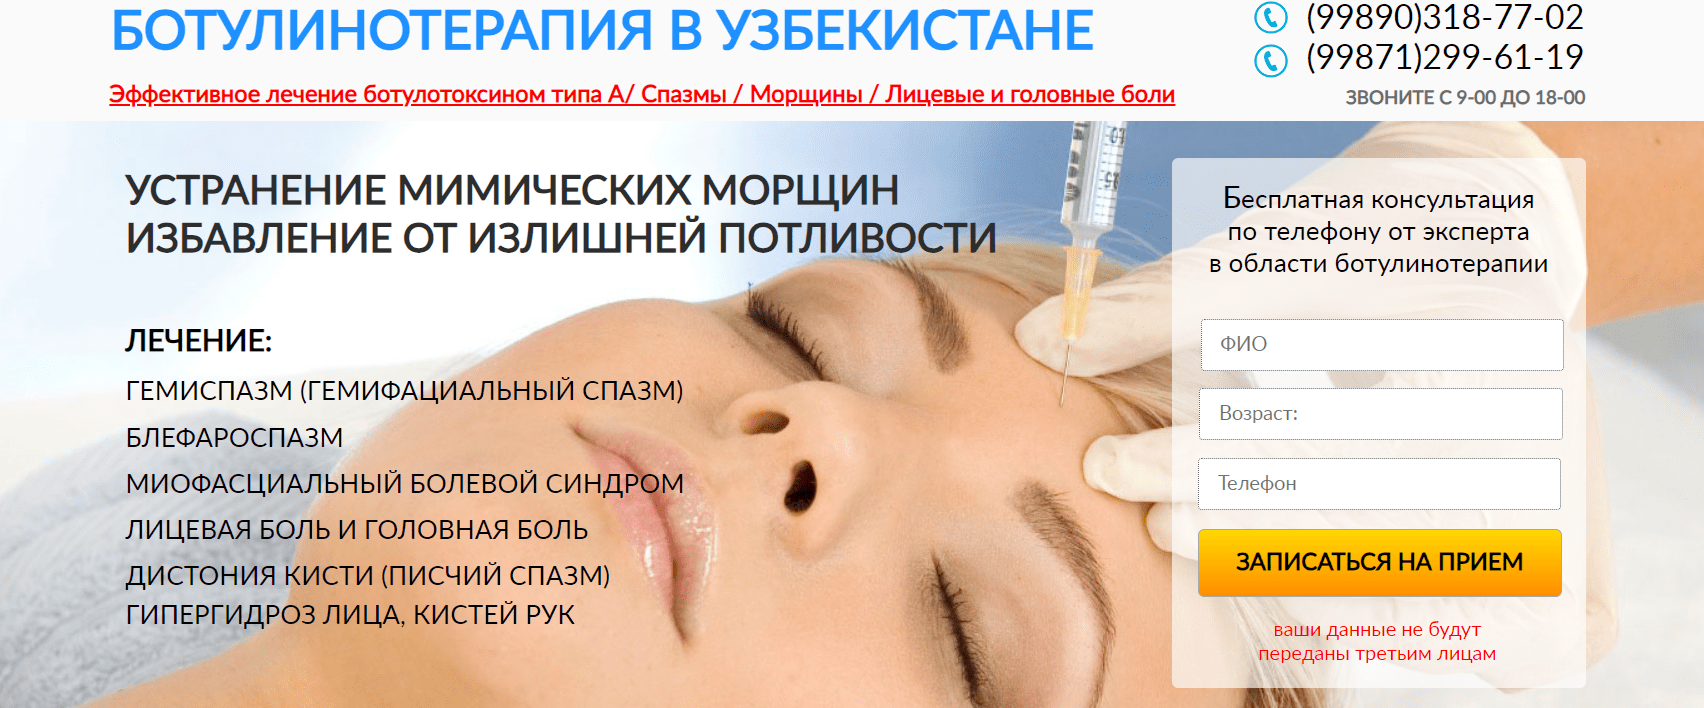 Ботулинотерапия в Узбекистане (botox.uz) - официальный сайт